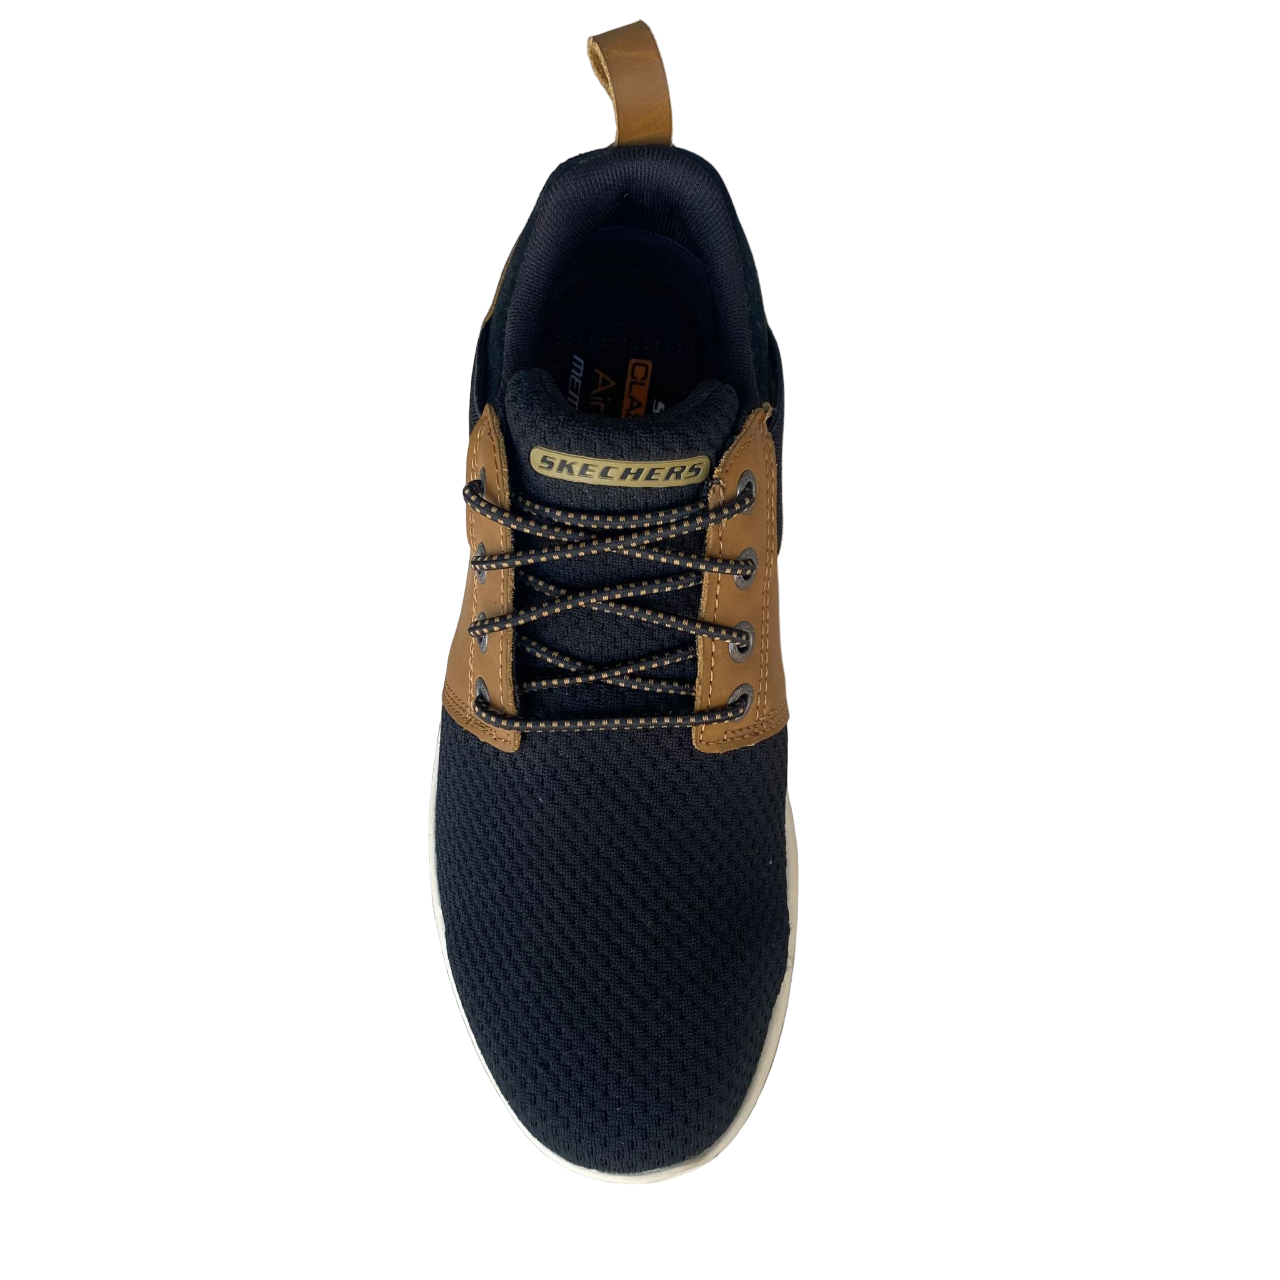 Skechers scarpa casual da uomo Delson Brant 65642 BRBK brown black